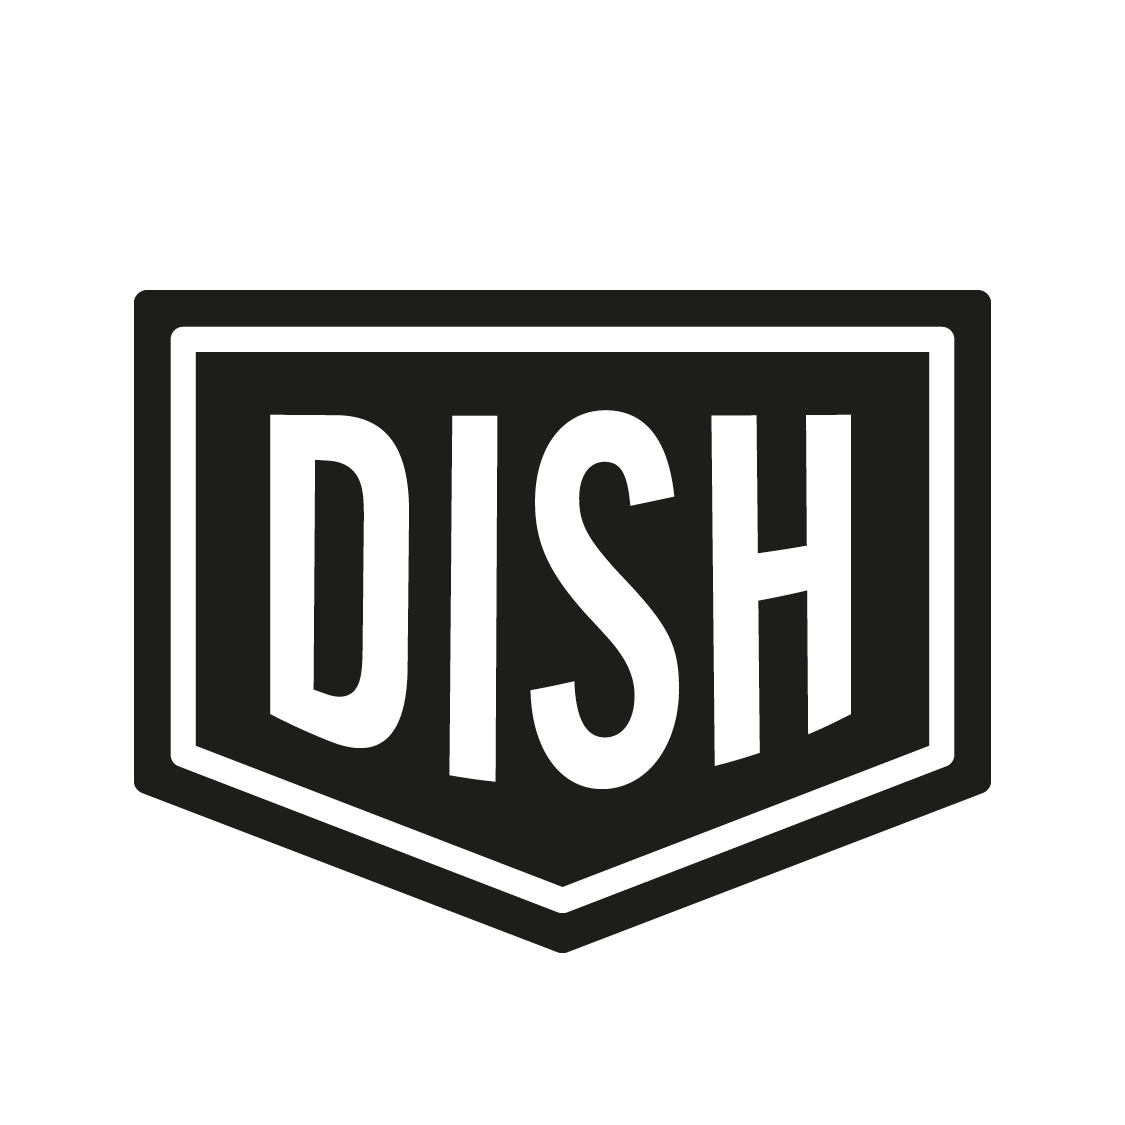 Dish L